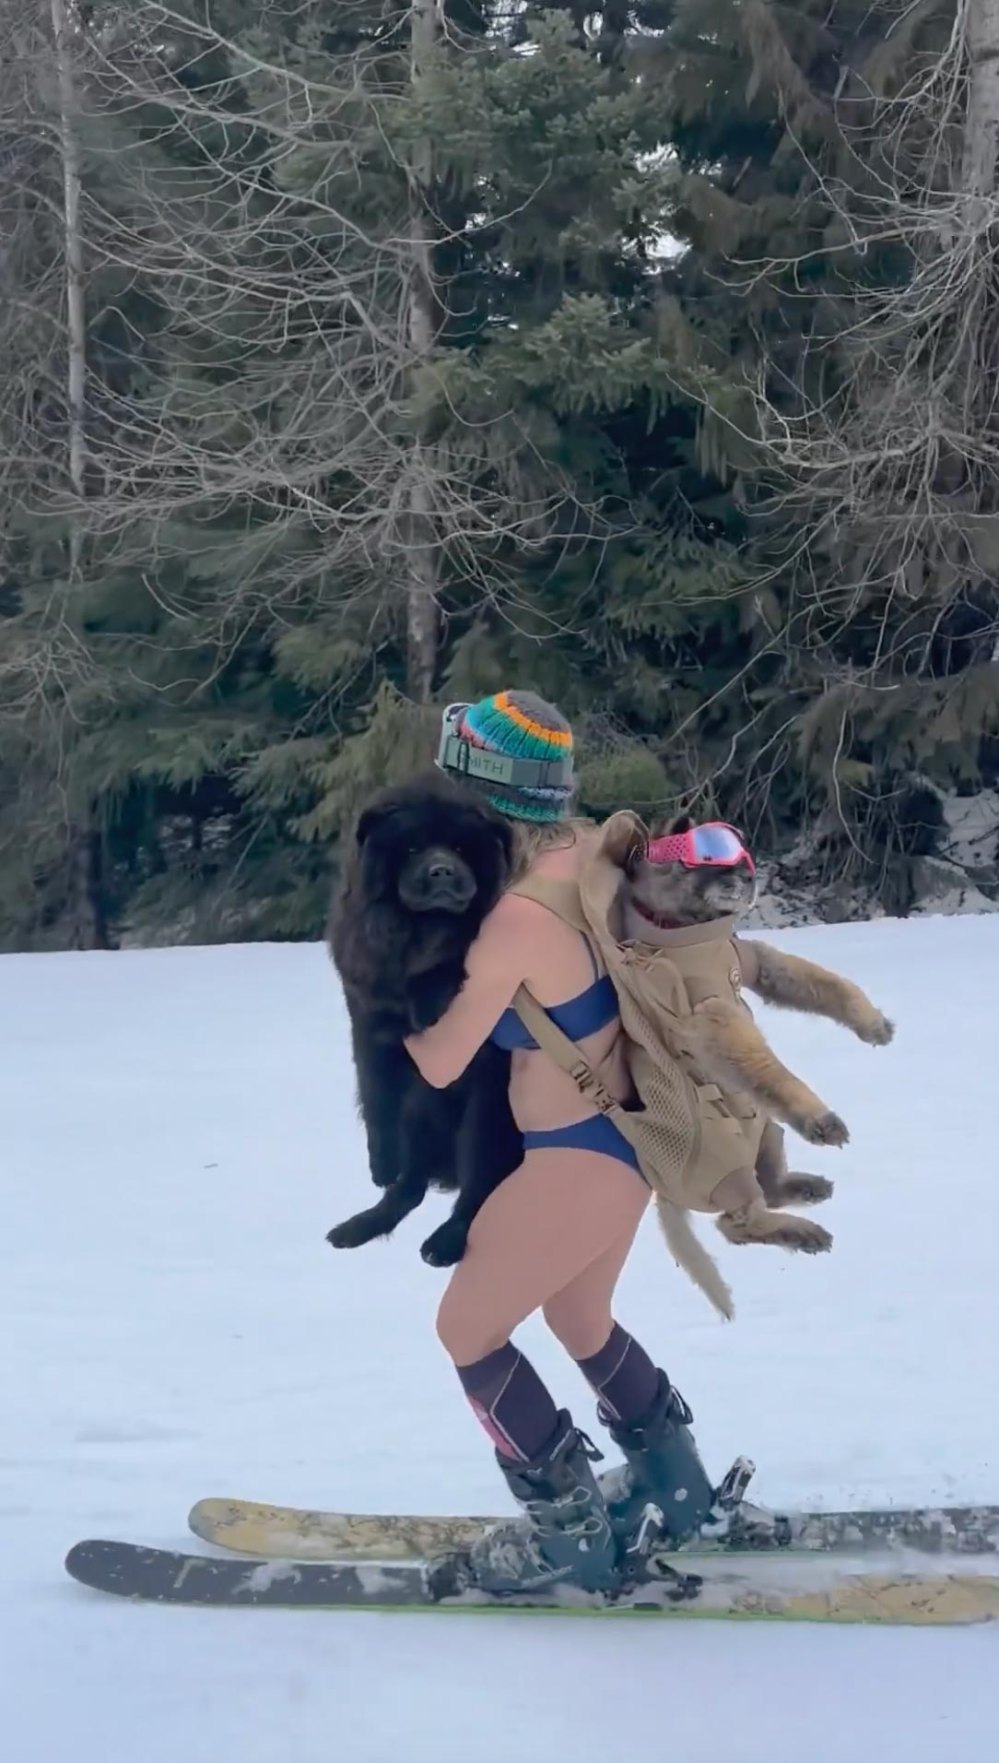 Chelsea-Handlerin feiert ihren Geburtstag beim Skifahren im Bikini, hält Hunde-Joint und trinkt